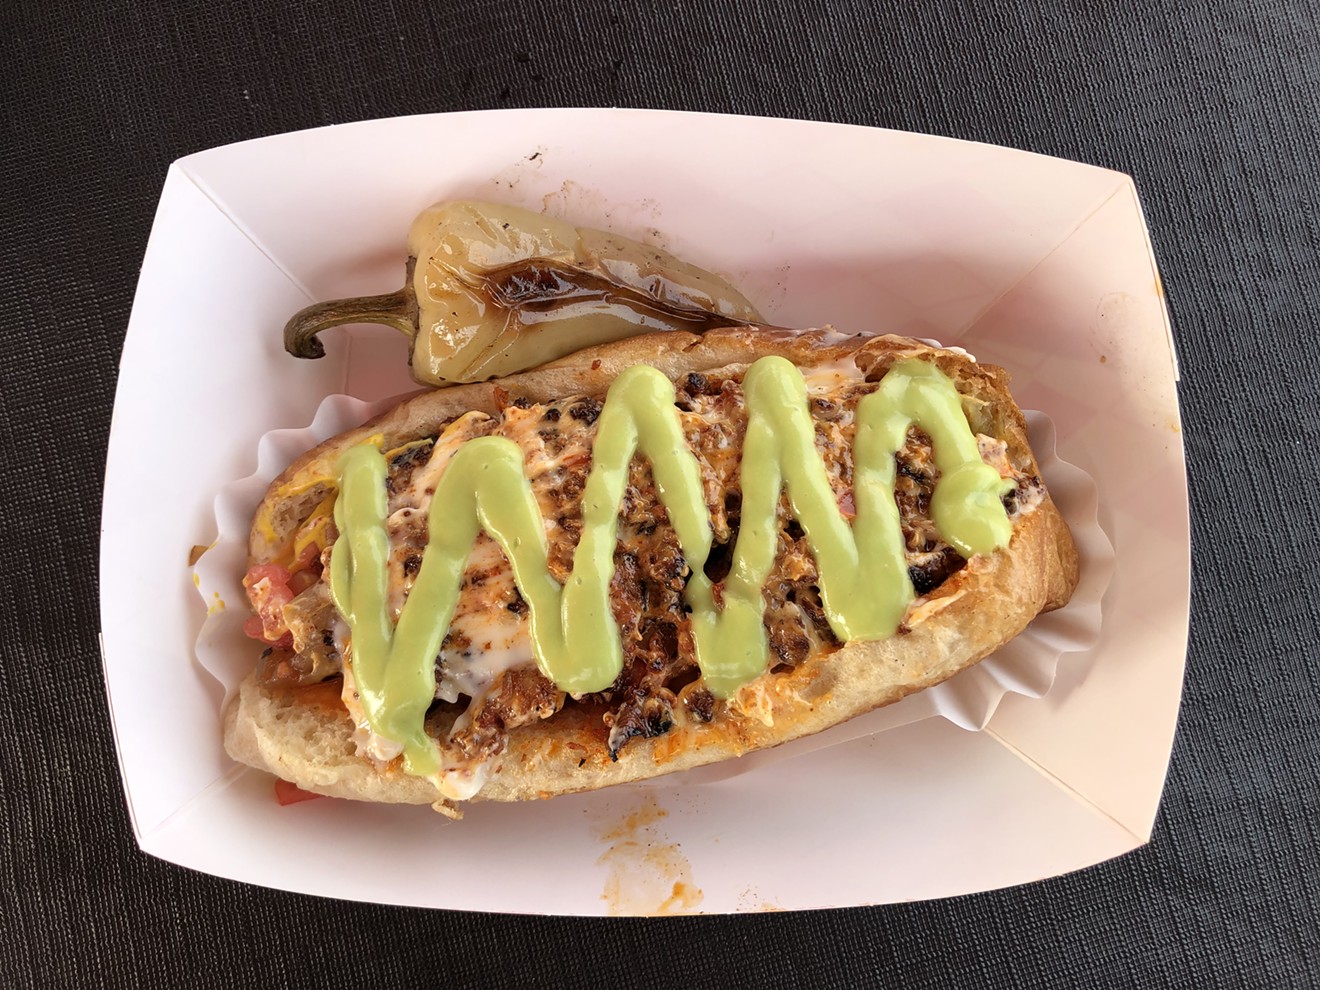 The Choridogo, a Sonoran hot dog with chorizo.